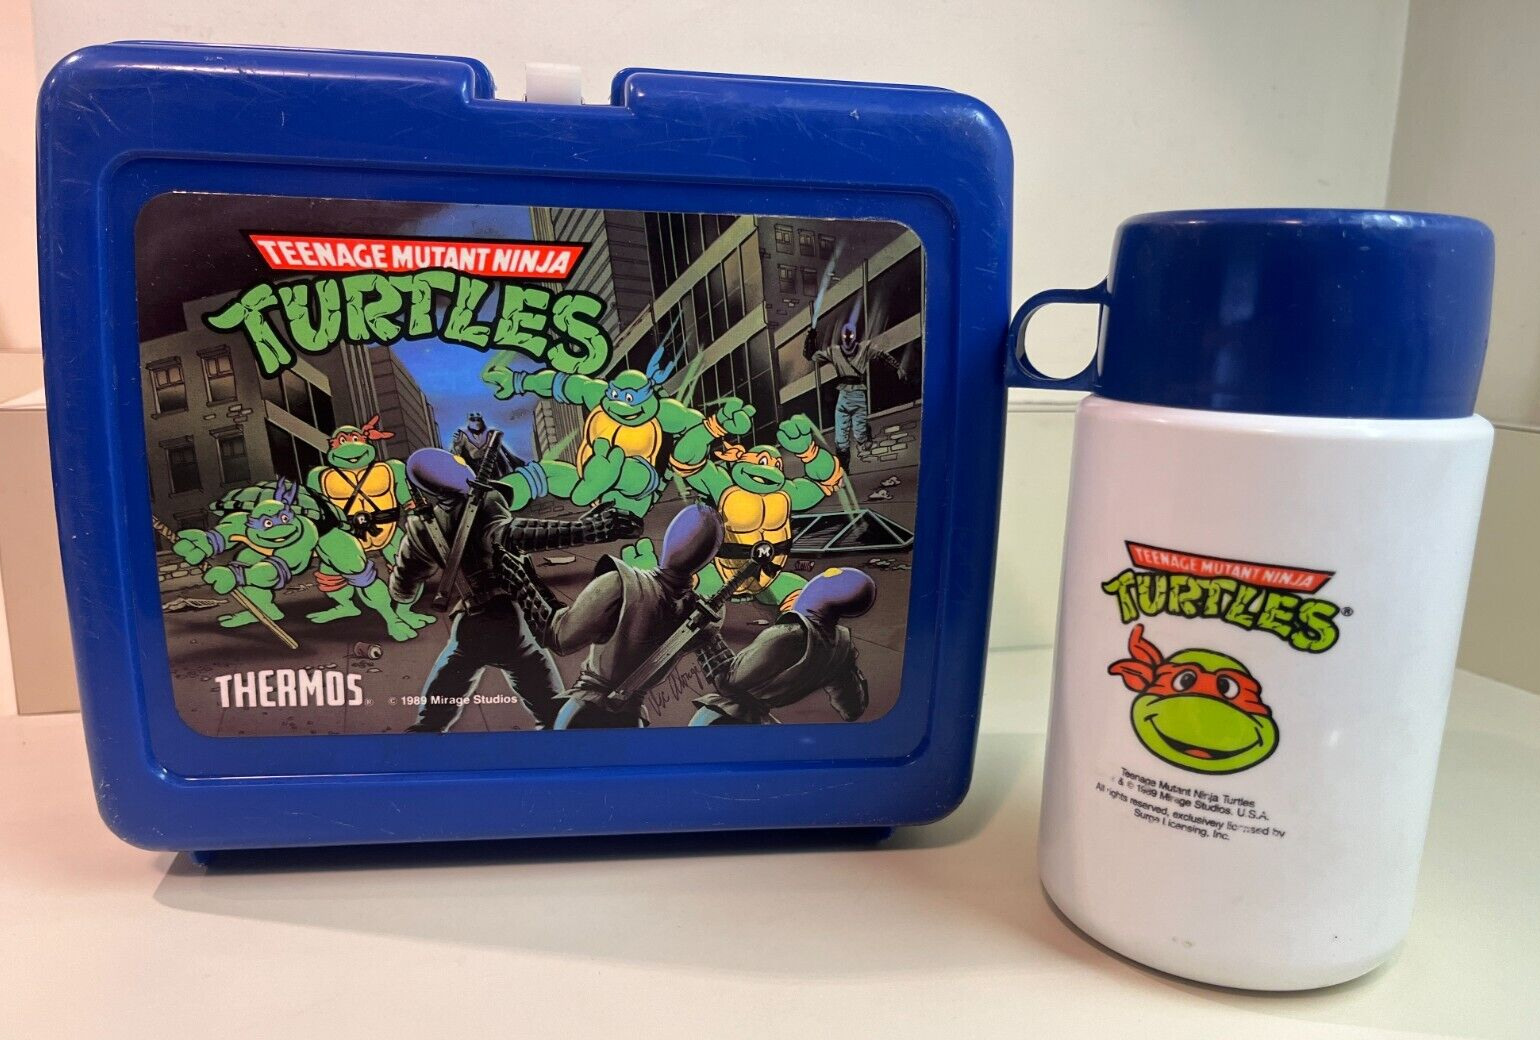 Teenage Mutant Ninja Turtles Blue Lunch Box & Thermos Plastic TMNT Vintage 1989